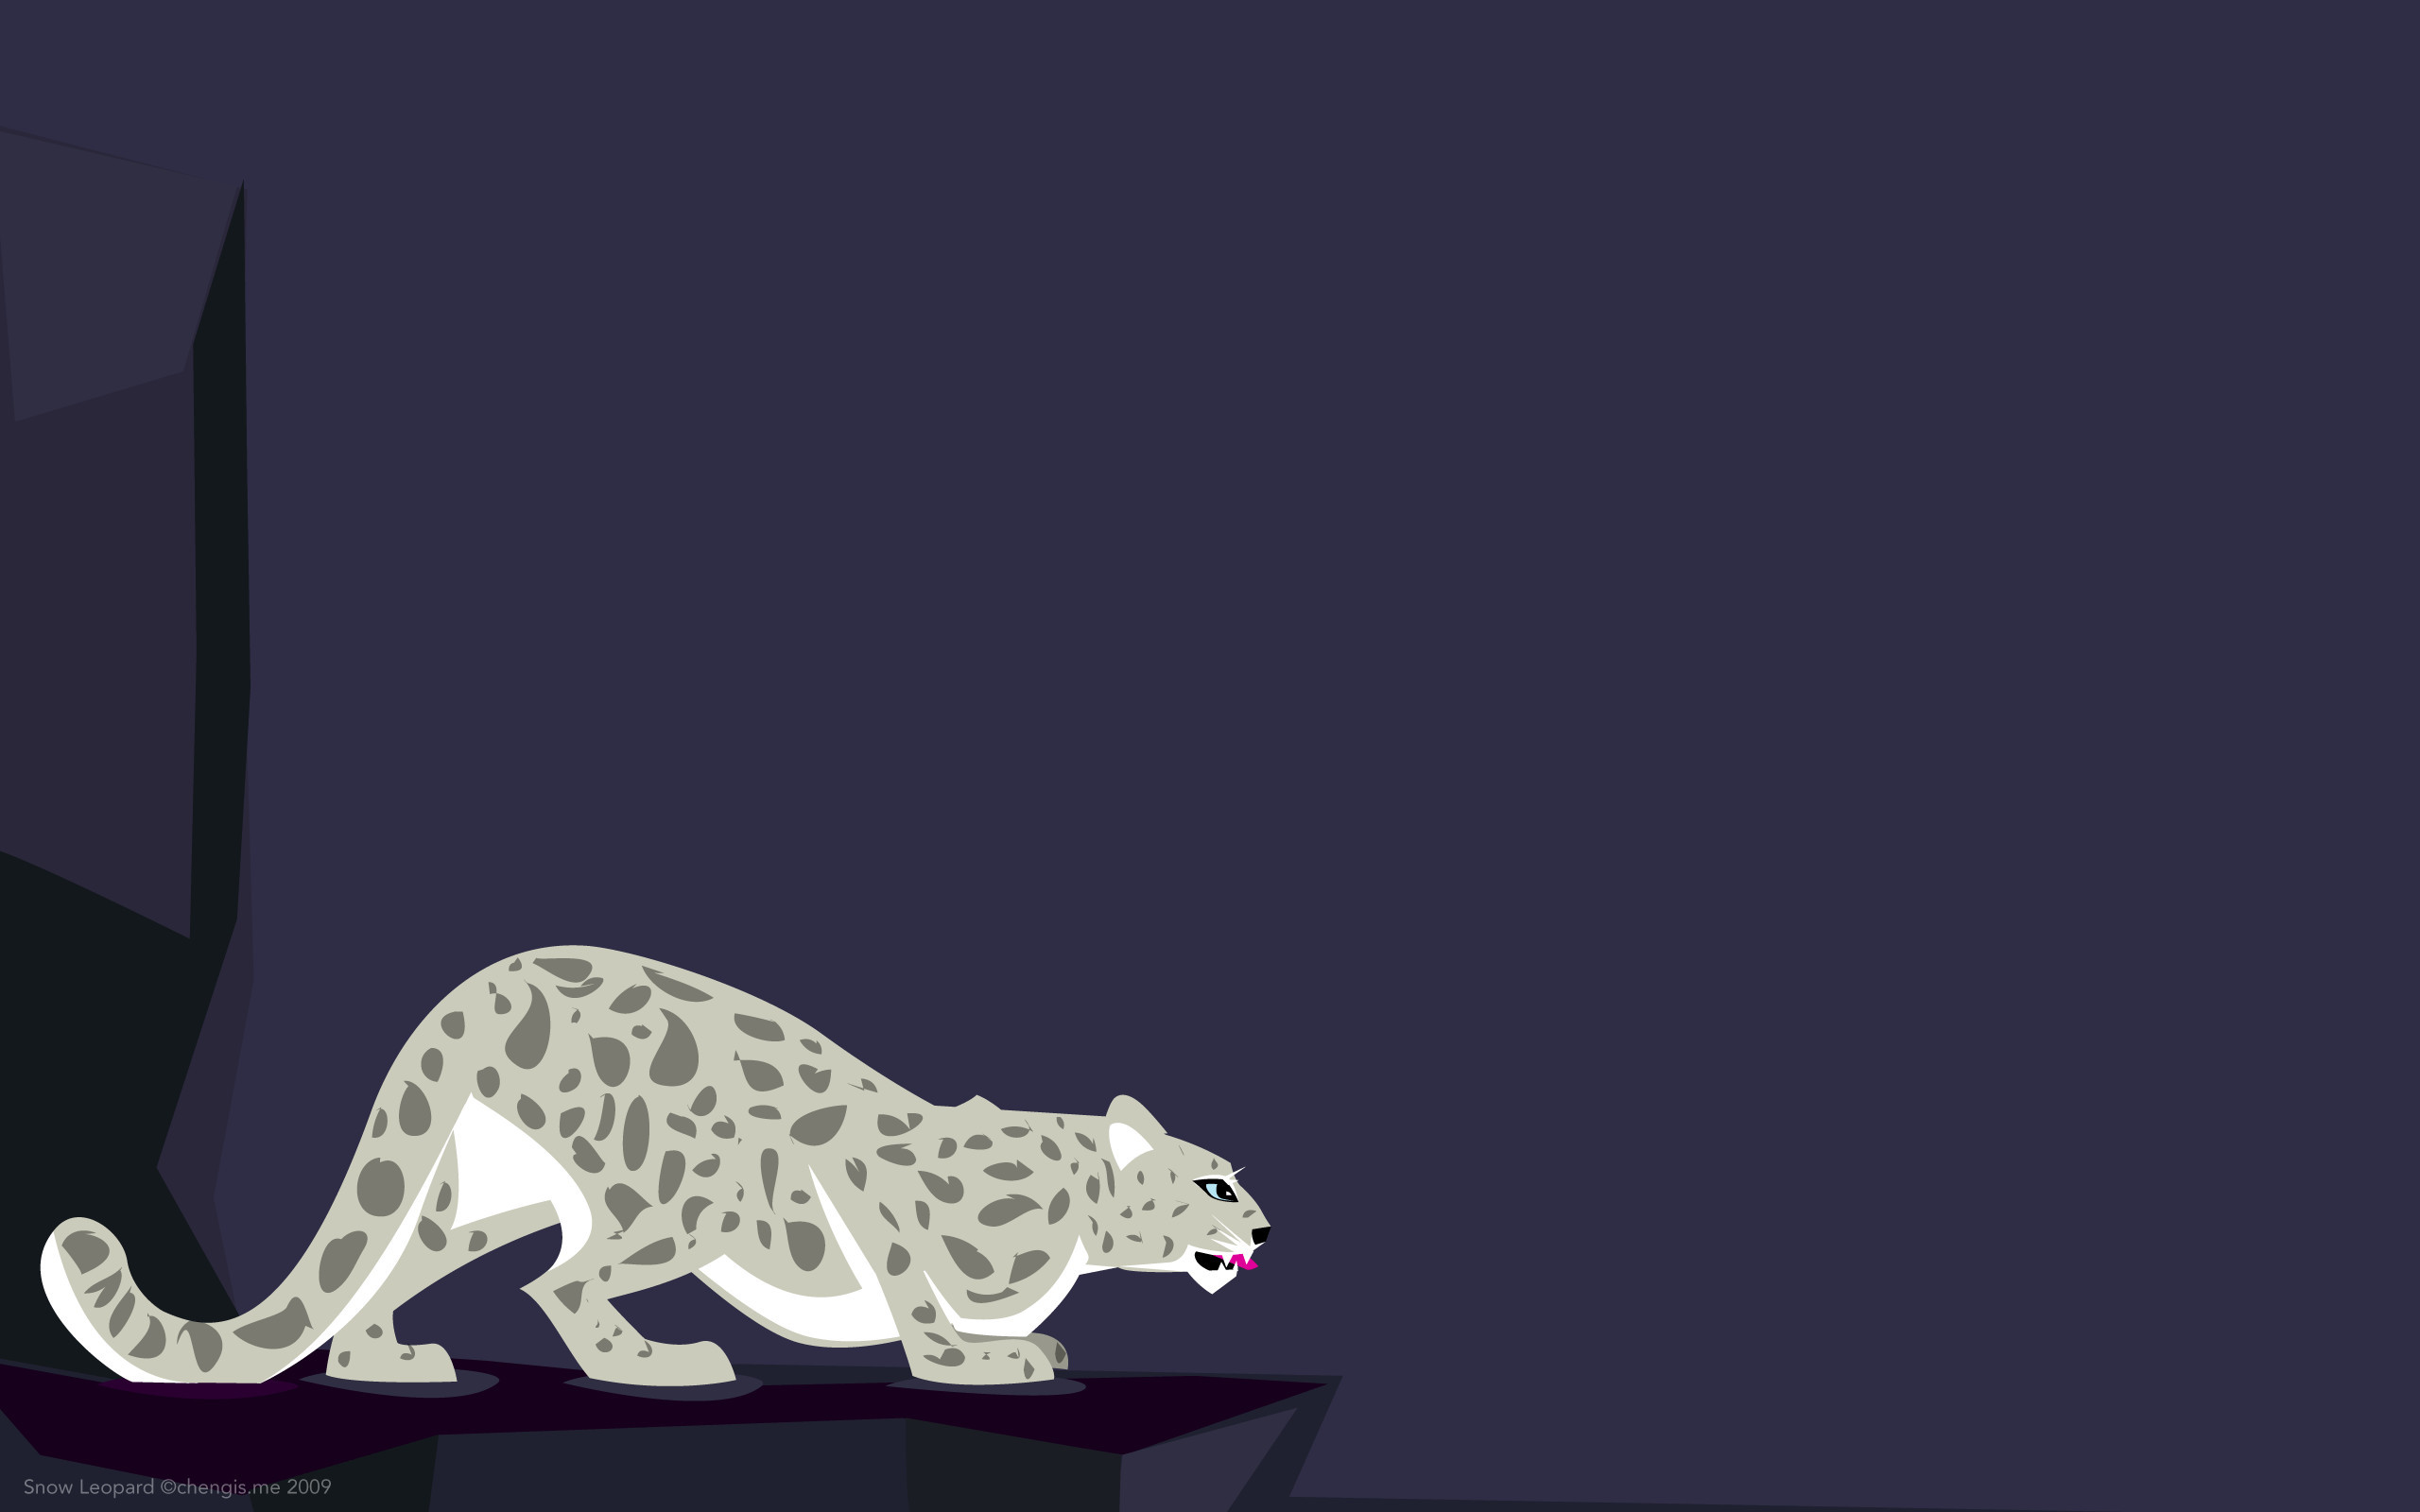 2560x1600, Os X Snow Leopard Wallpaper Px, - Draw A Snow Leopard - HD Wallpaper 